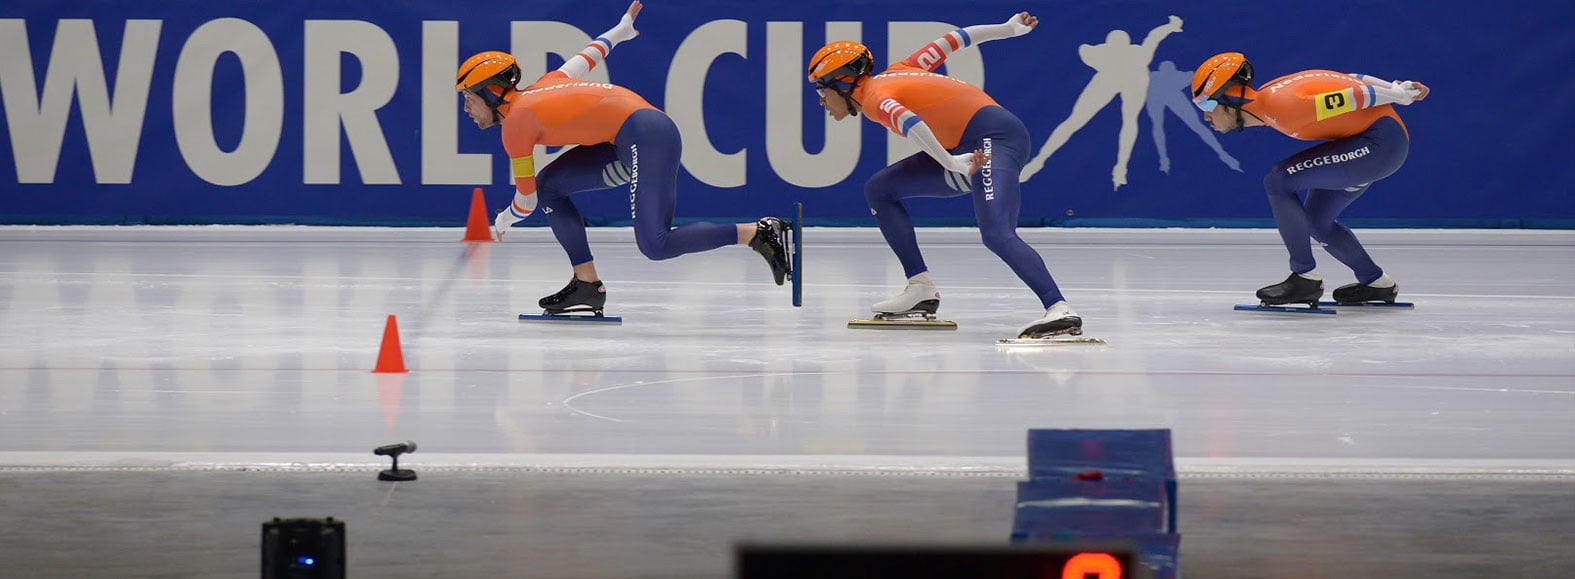 Team NL beim Weltcup im Eisschnelllauf